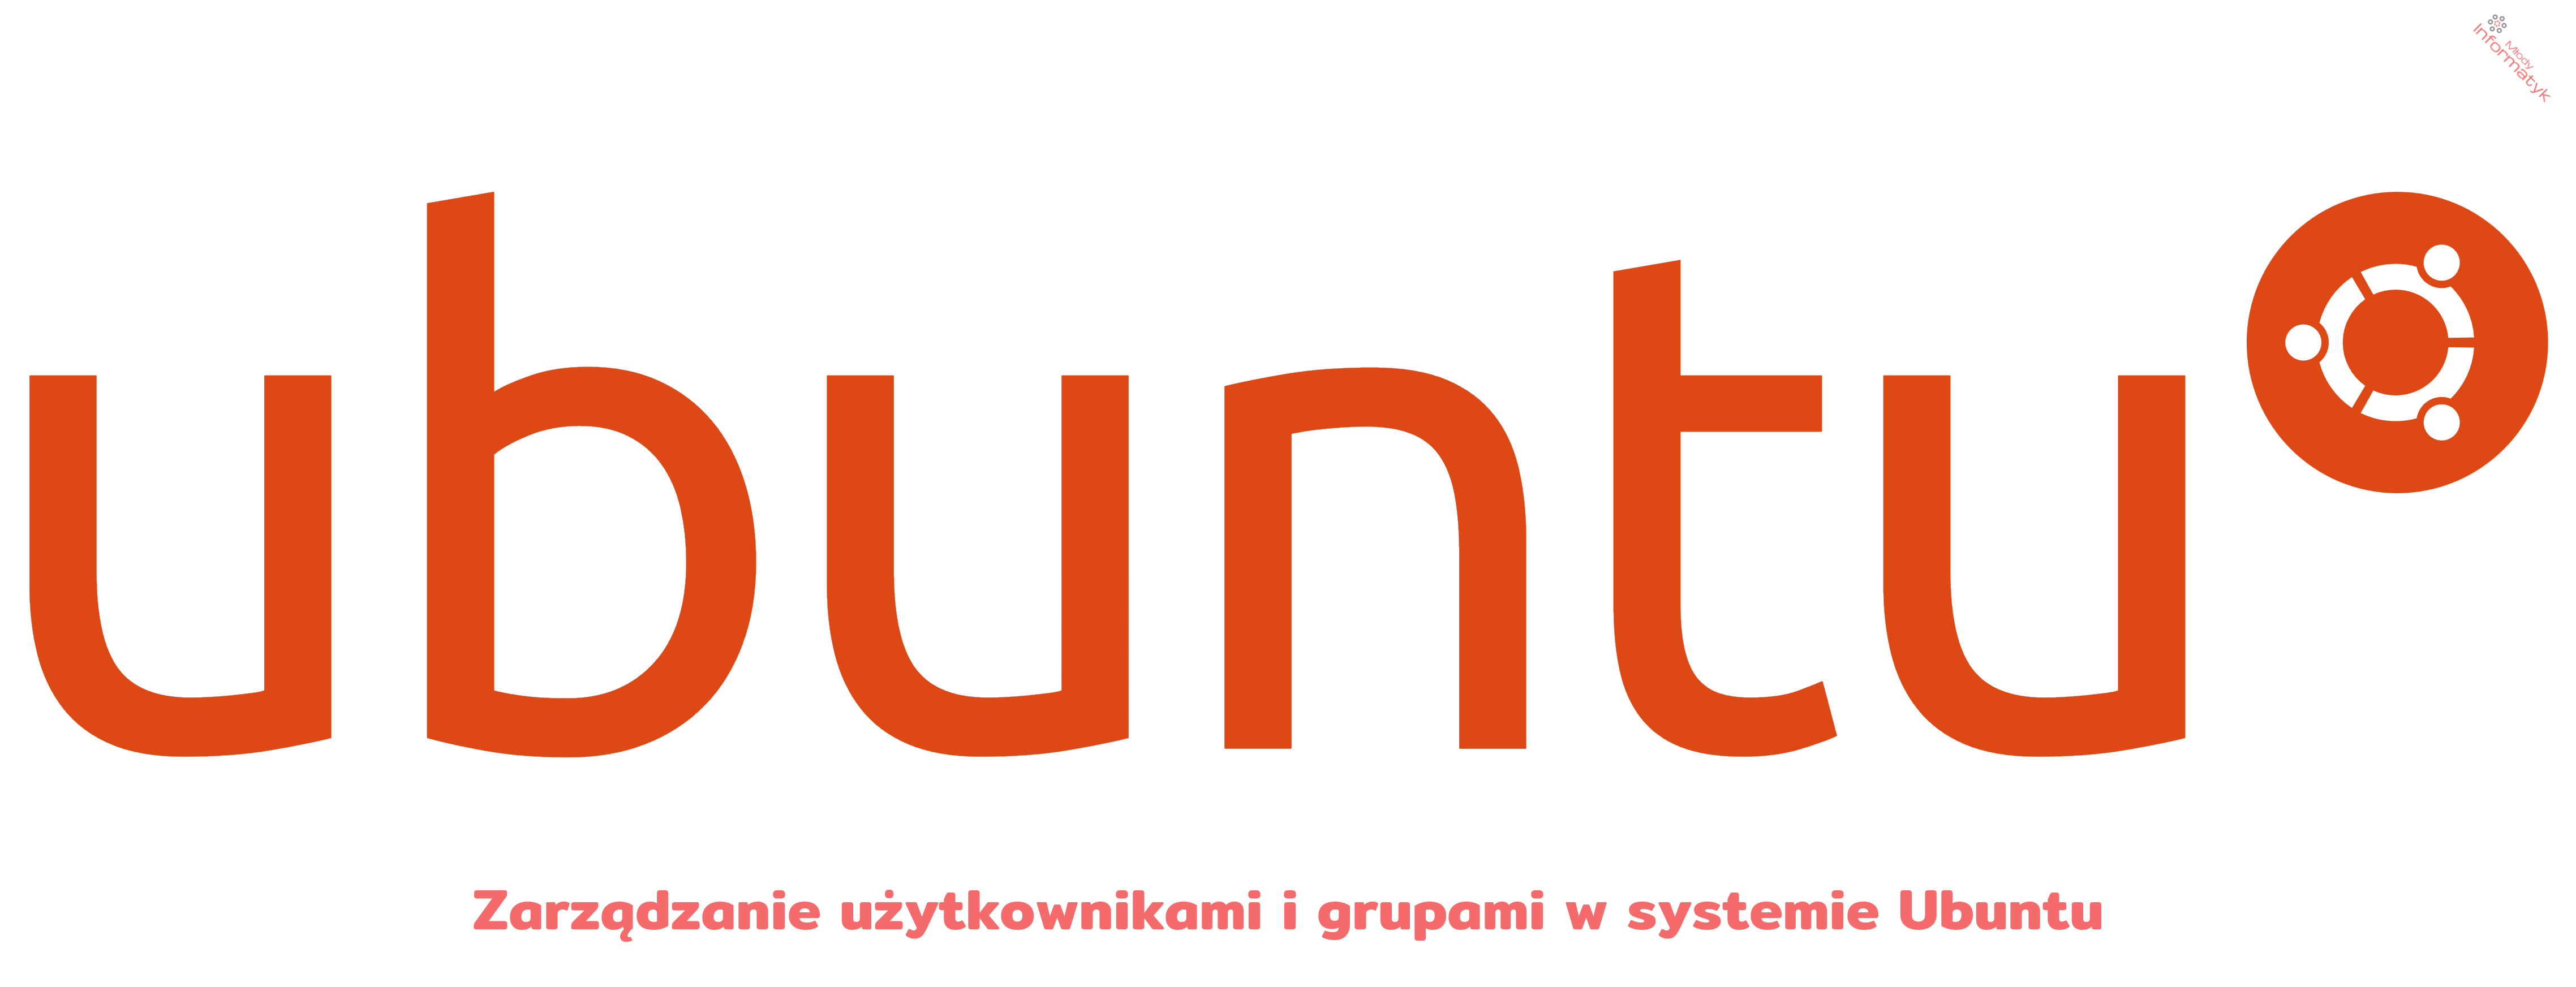 Zarządzanie użytkownikami i grupami w systemie Ubuntu